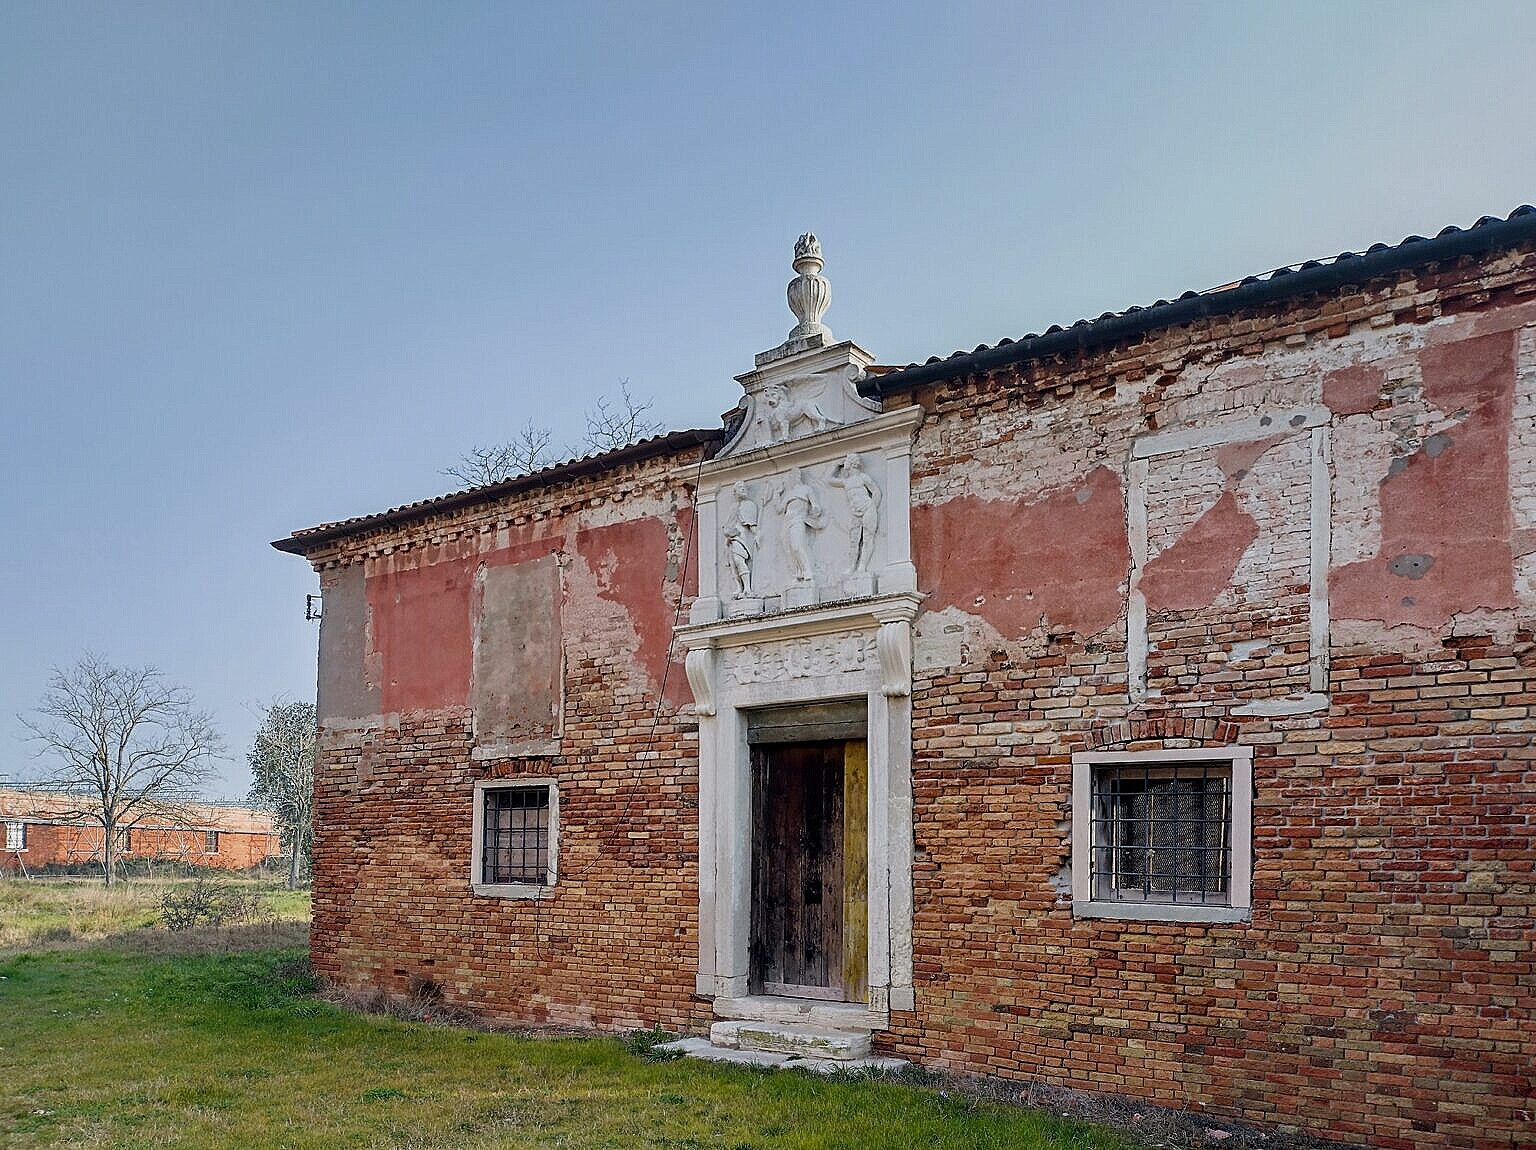 The façade of the Tezon Vecchio at the Lazzaretto Vecchio